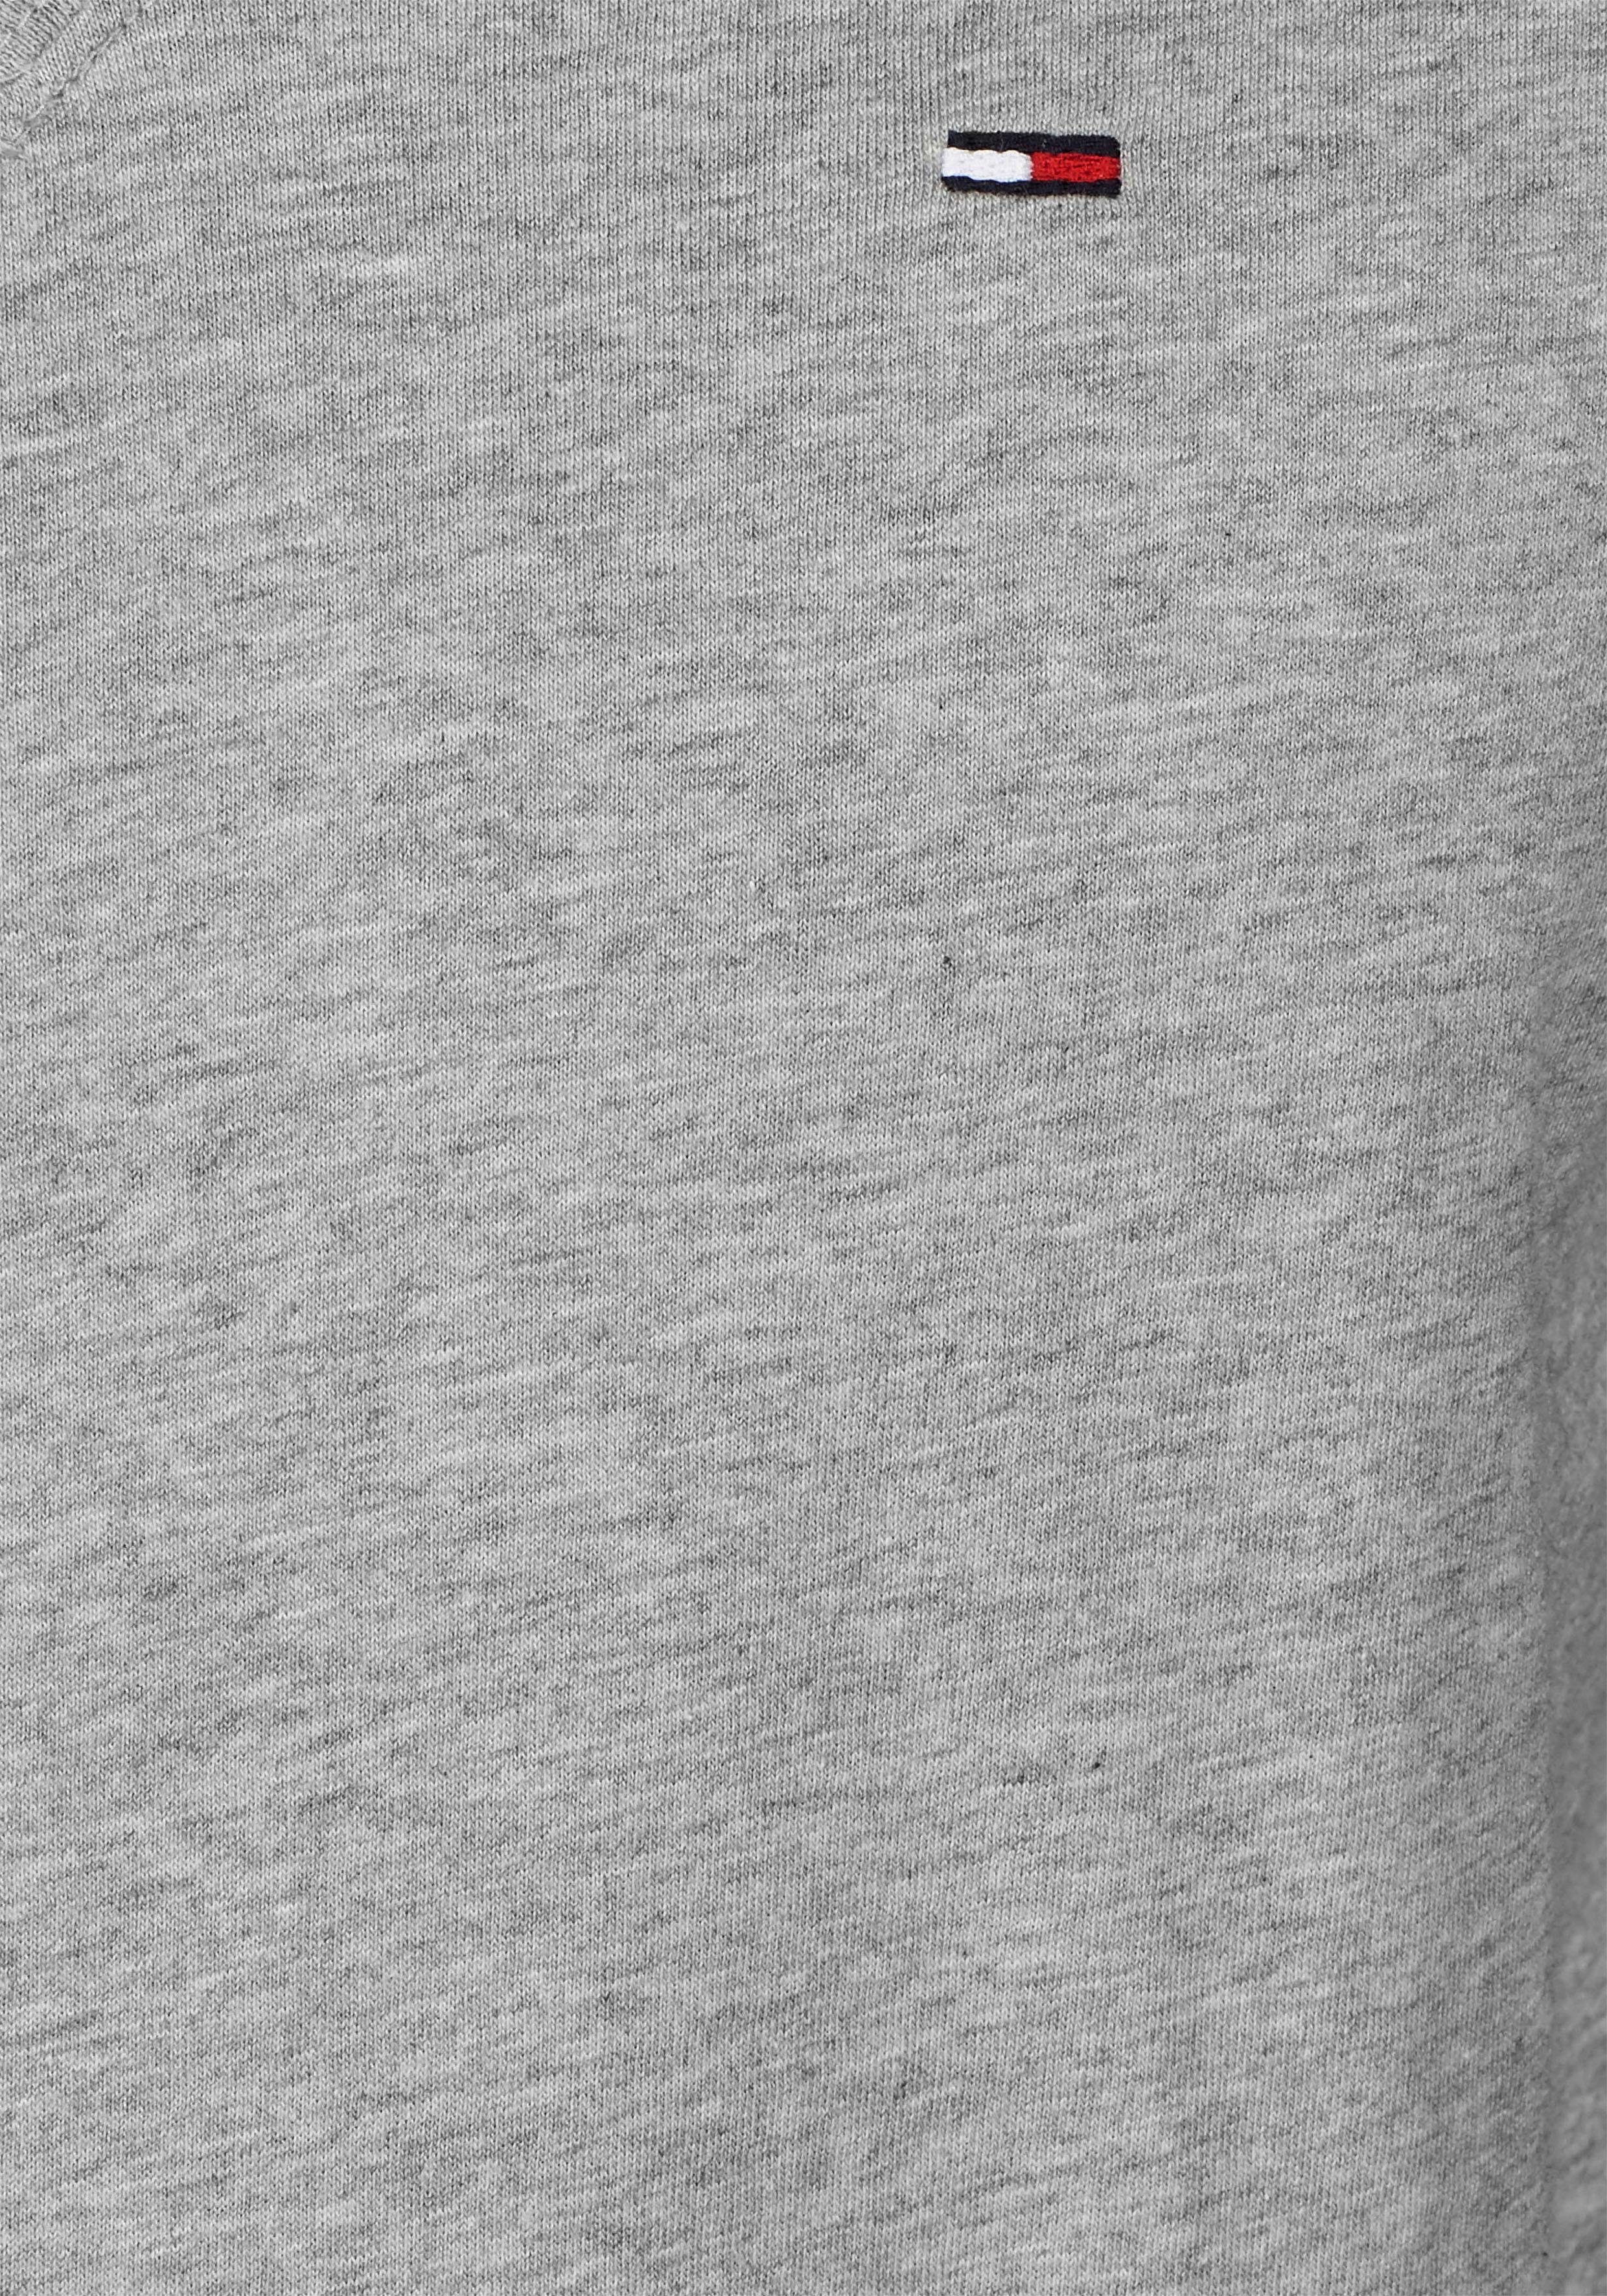 grey 038 ORIGINAL mit TJM und light heather NECK V TEE Logo-Flag Tommy dezenter V-Ausschnitt Jeans JERSEY T-Shirt